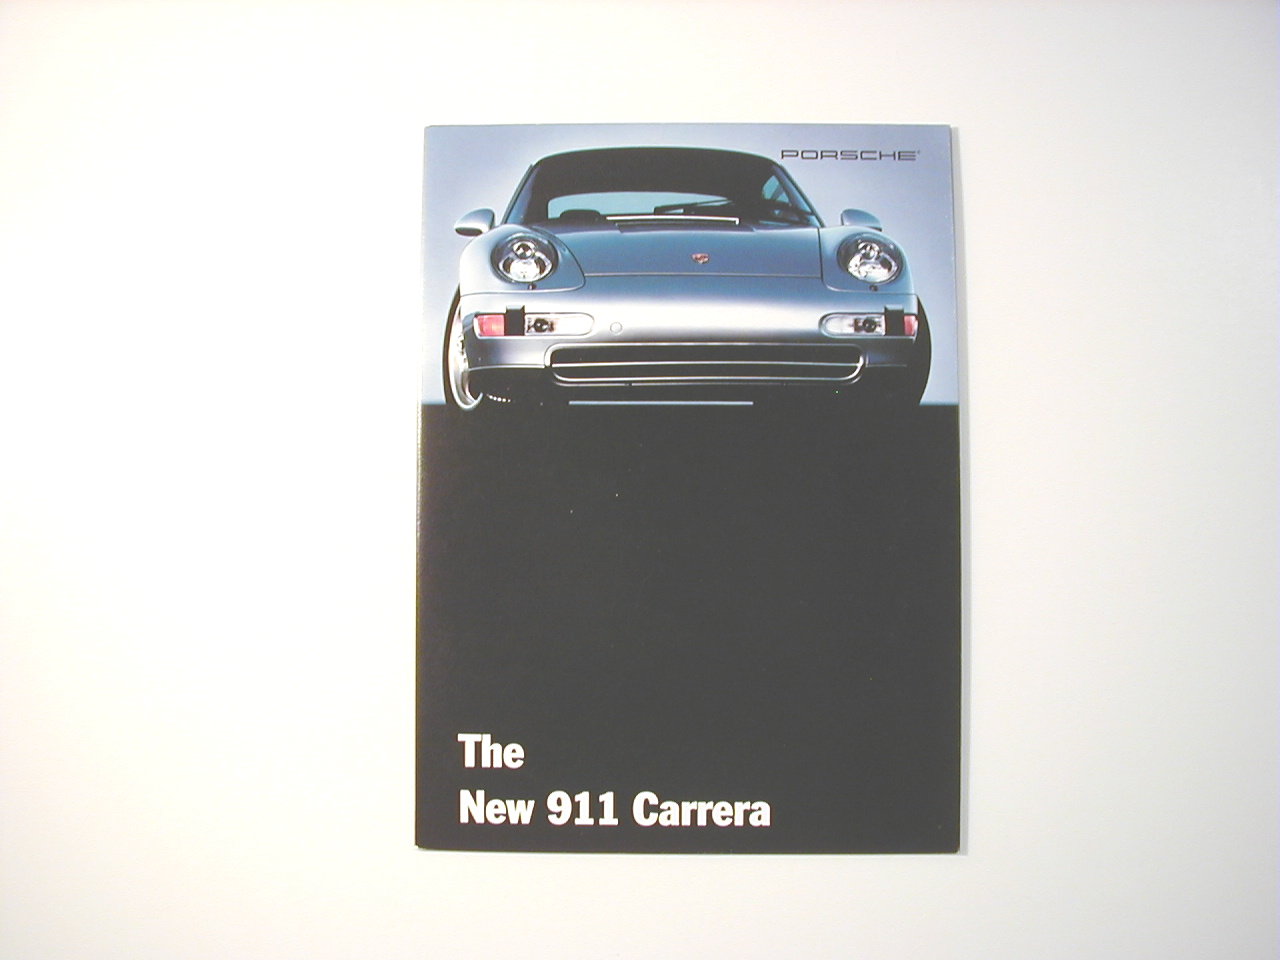 The New 911 Carrera Sales Brochure